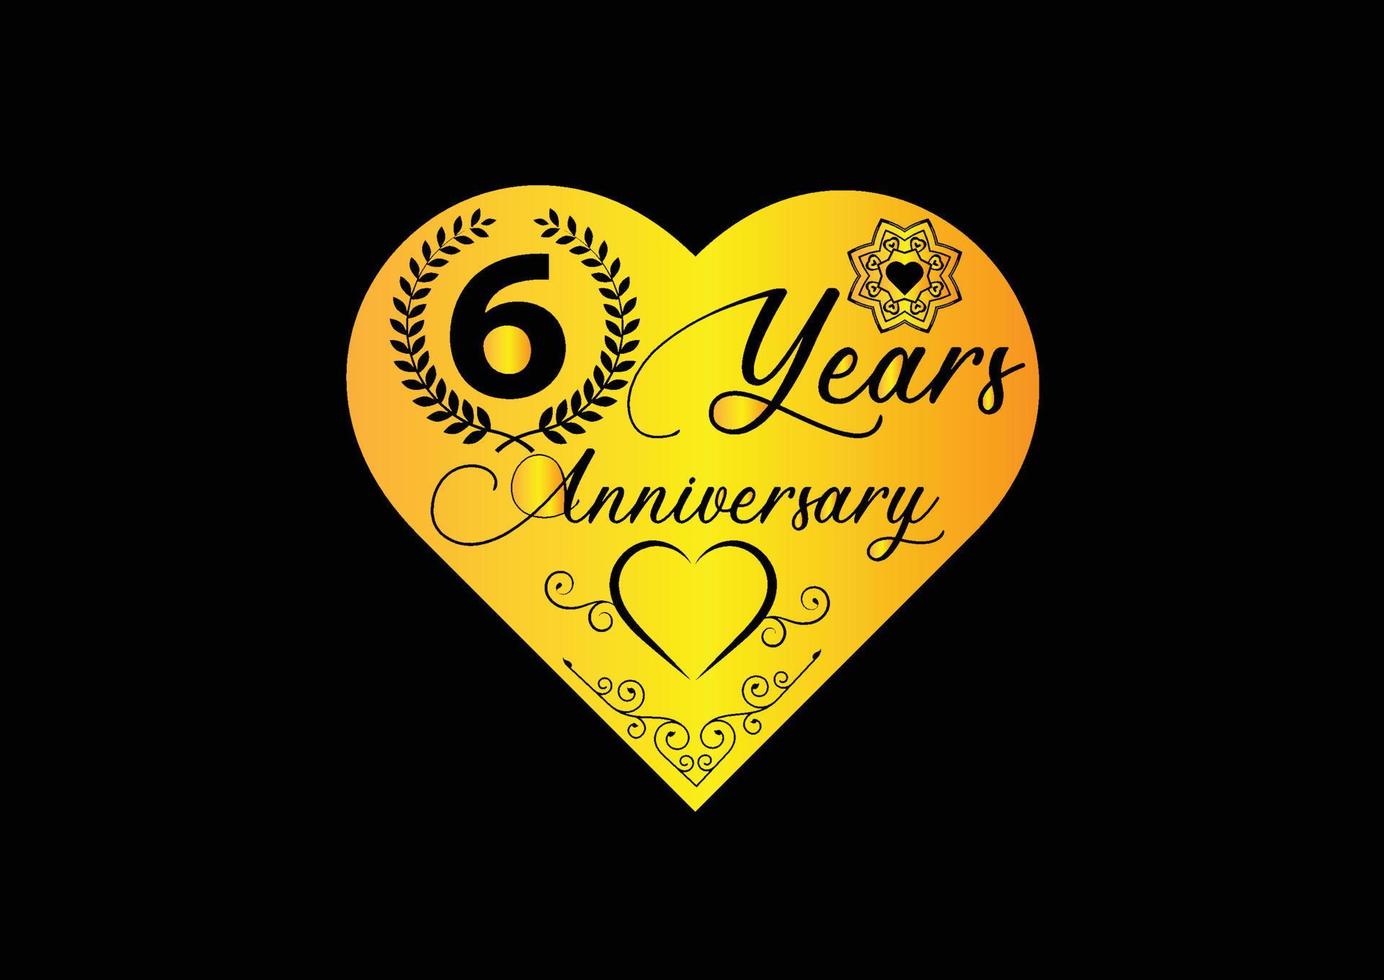 Célébration d'anniversaire de 6 ans avec logo d'amour et conception d'icônes vecteur